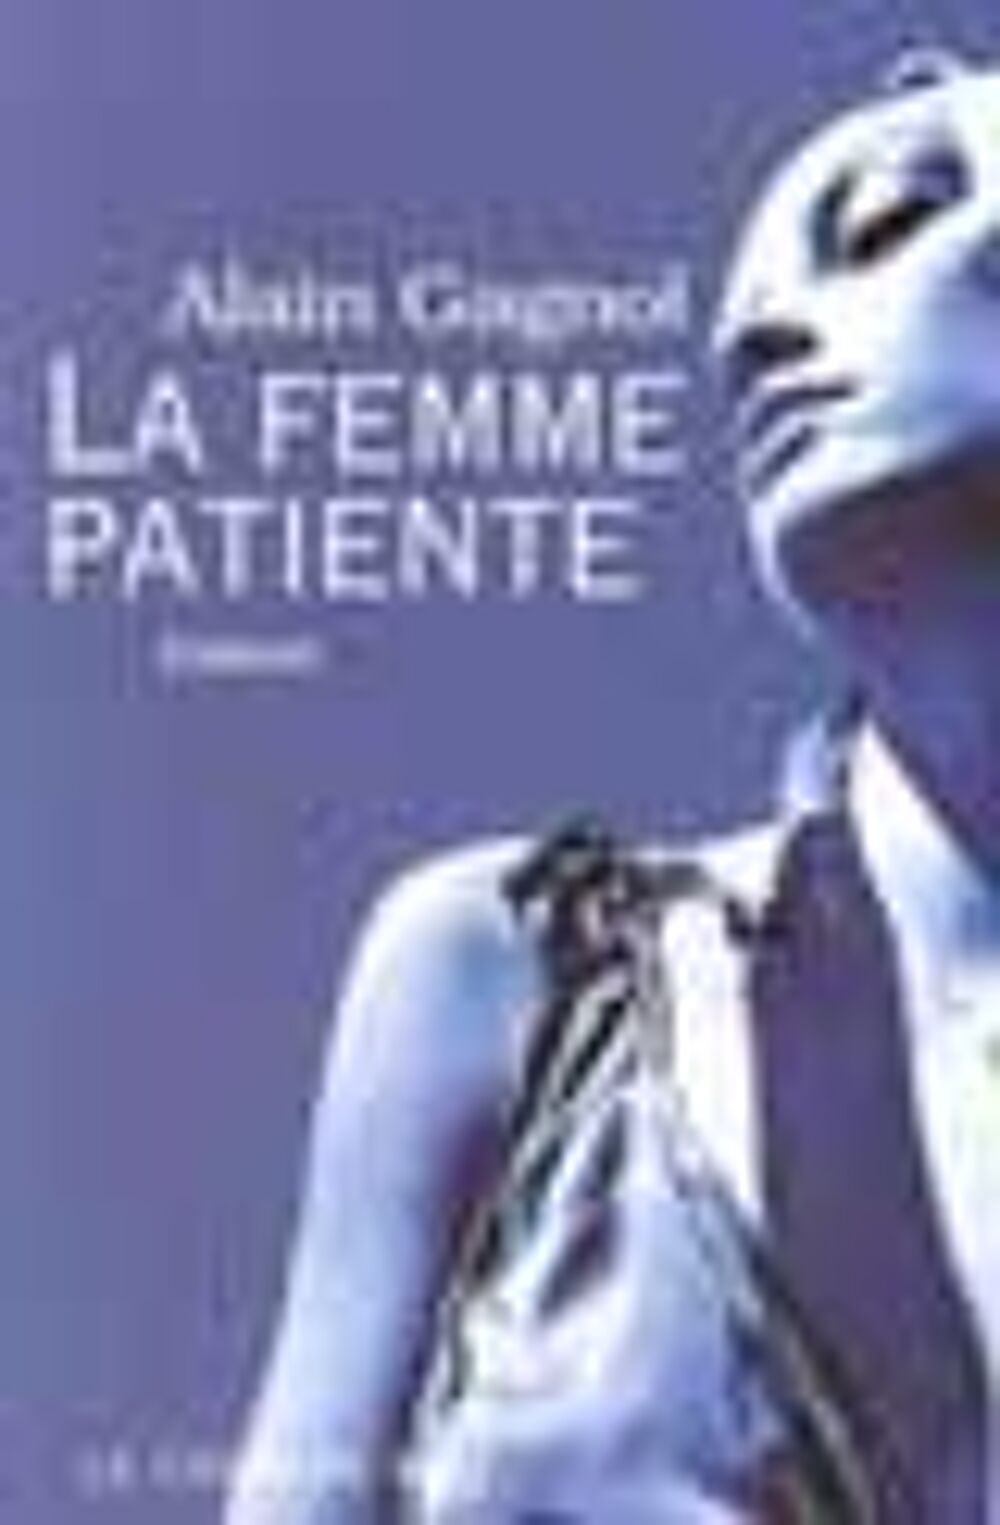 La femme patiente Alain Gagnol Livres et BD